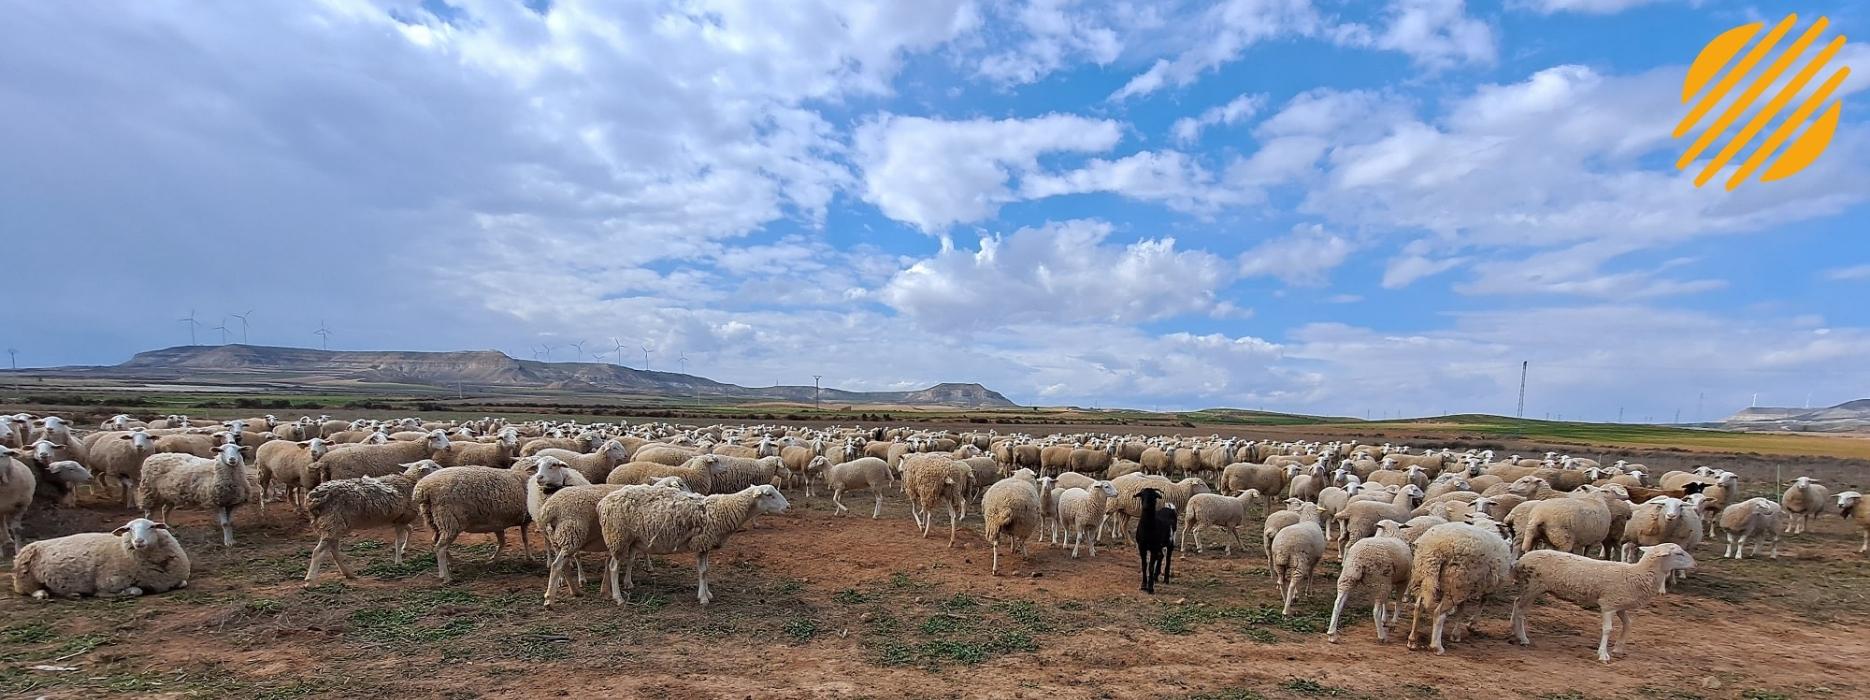 Parque fotovoltaico ovejas